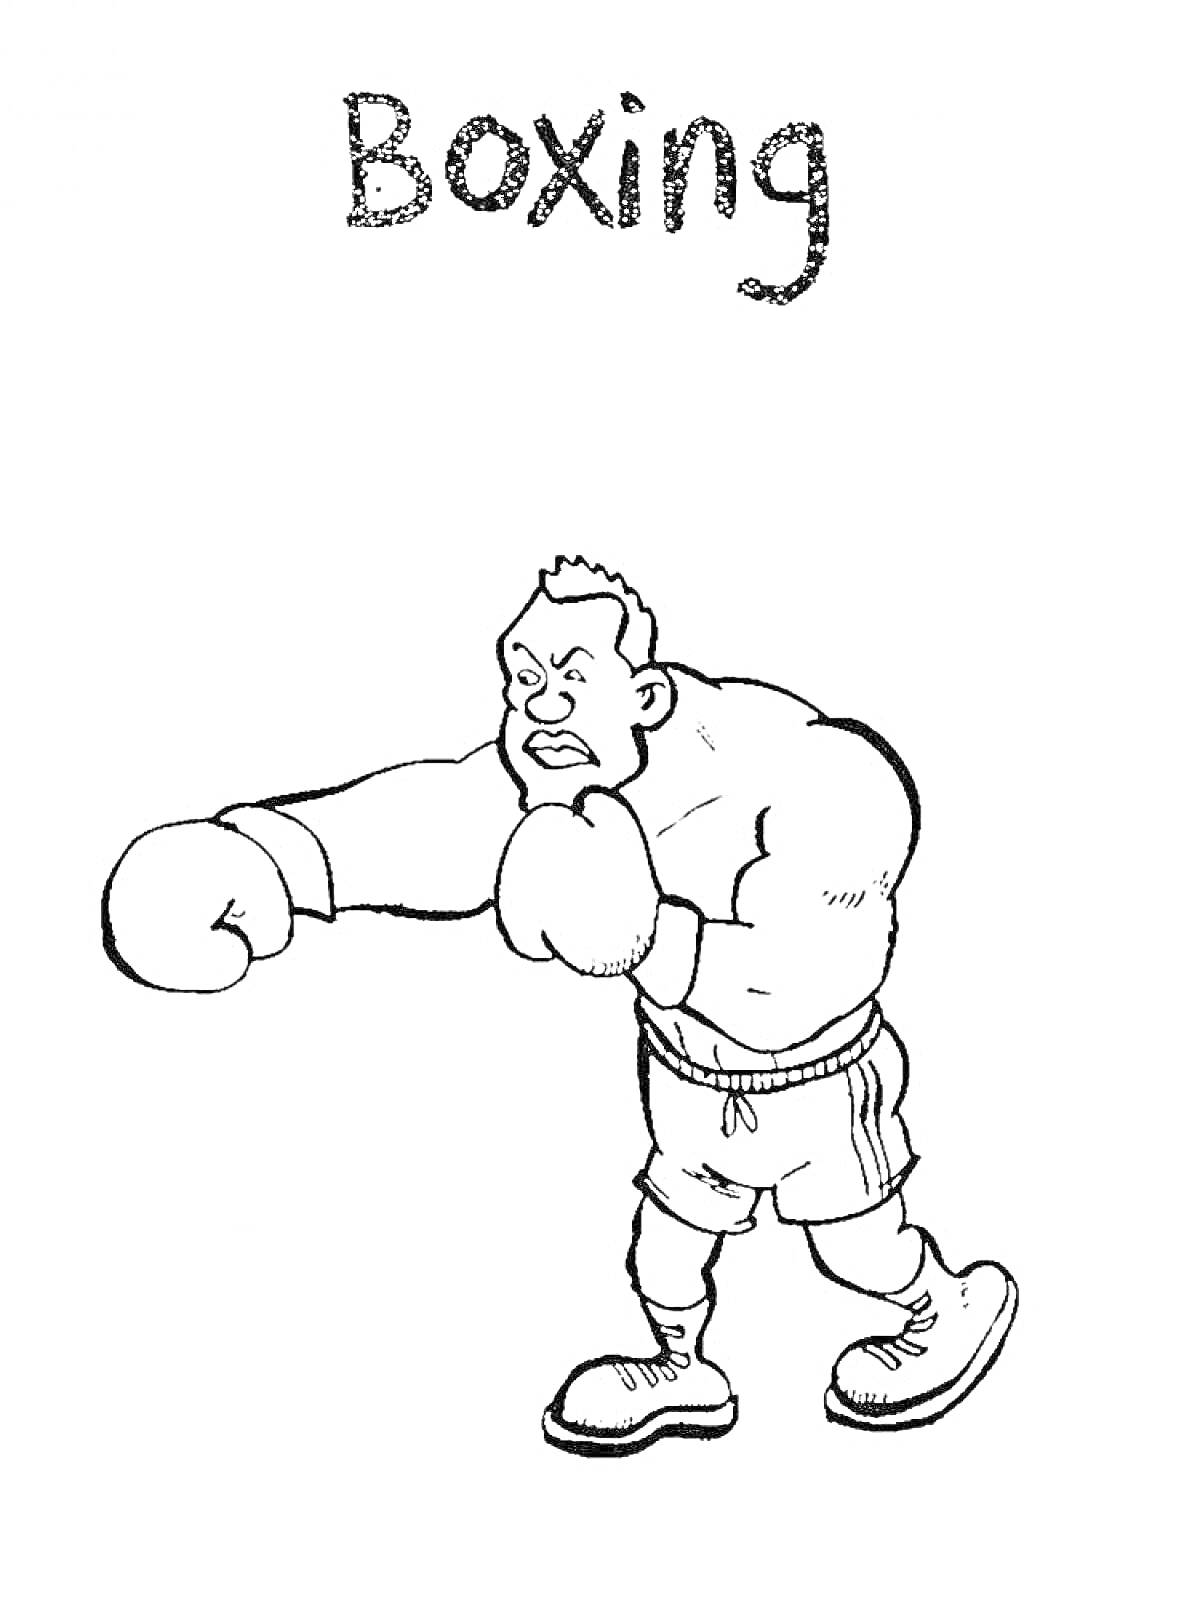 Раскраска Боксер в боевой стойке с надписью Boxing